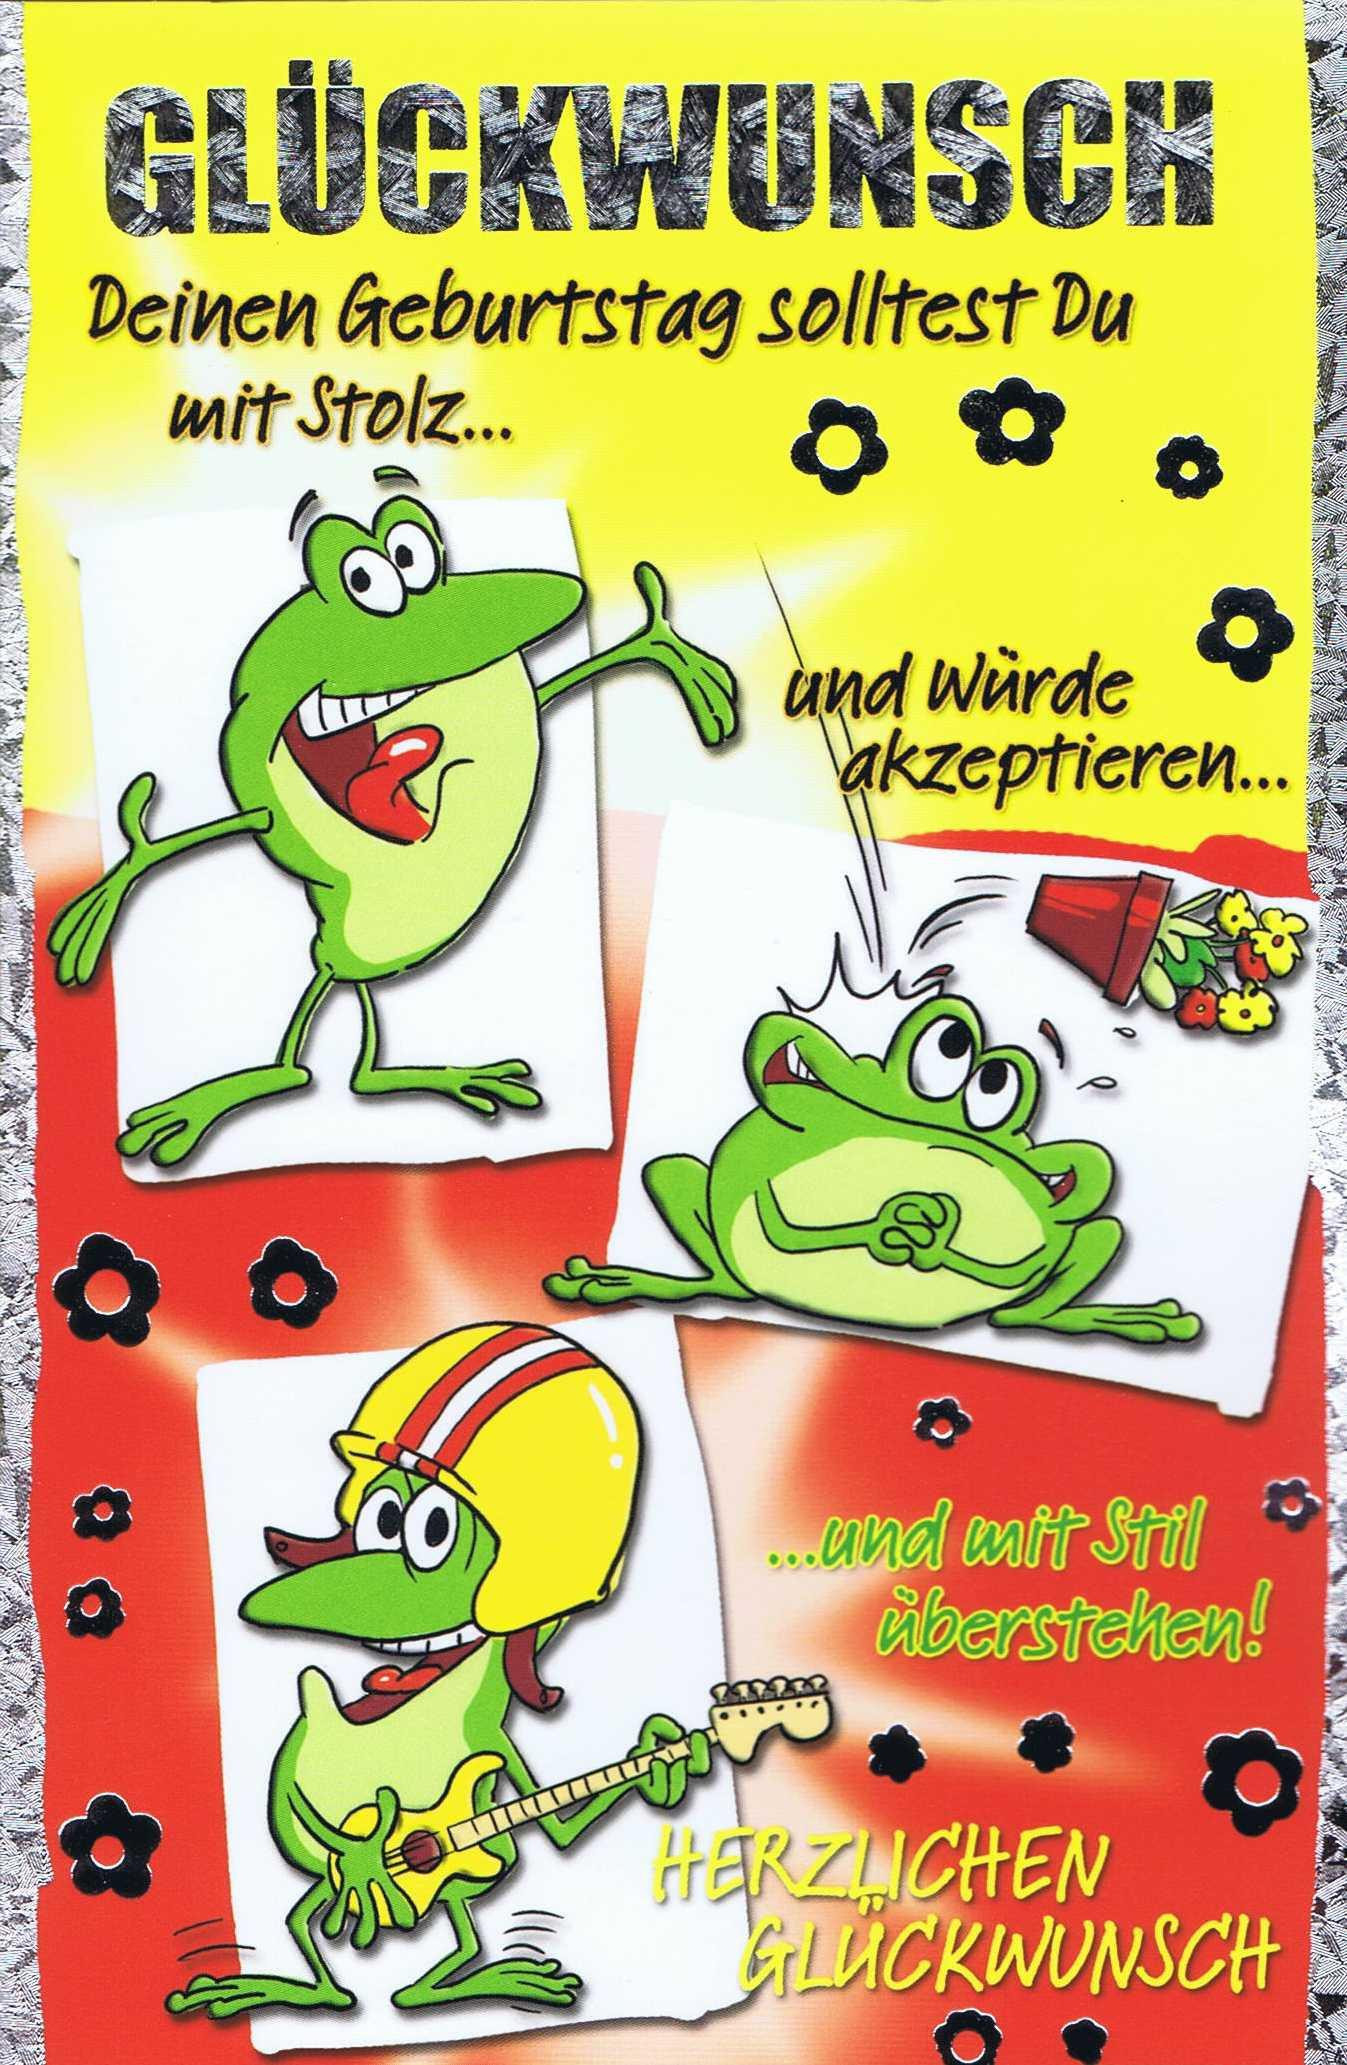 Geburtstagskarten Motive
 Geburtstagskarte Humor Motiv mit farbigen Umschlag